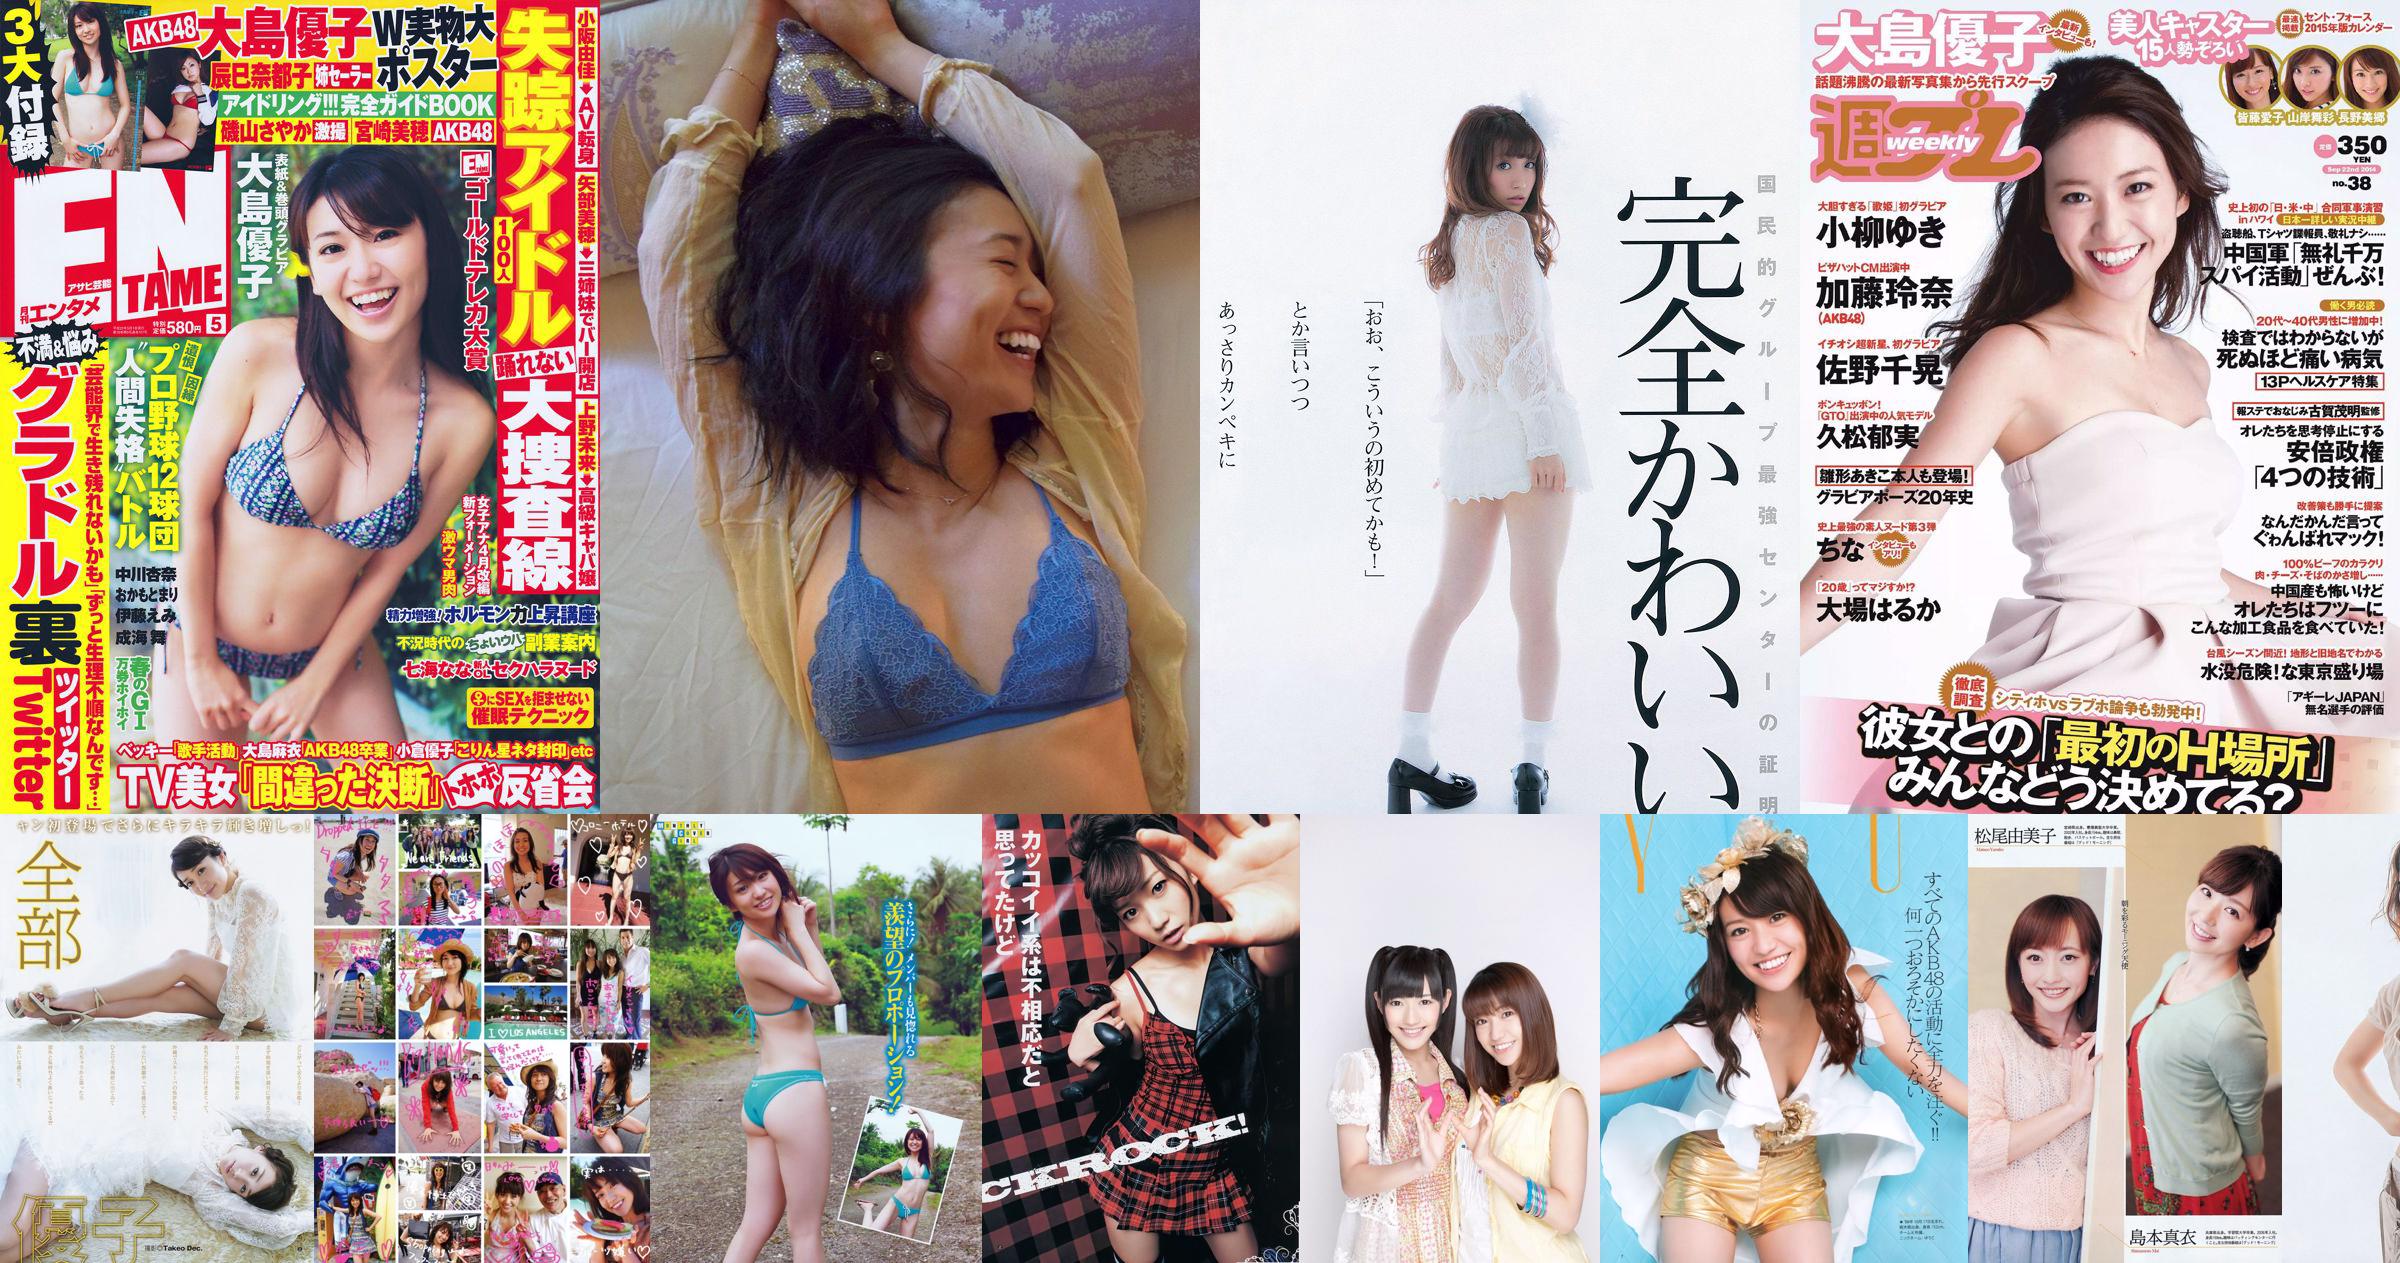 Yuko Oshima Chiaki Sano Ikumi Hisamatsu Rena Kato Yuki Koyanagi Haruka Oba [Weekly Playboy] 2014 No.38 Photo Toshi No.54c4c1 Page 1